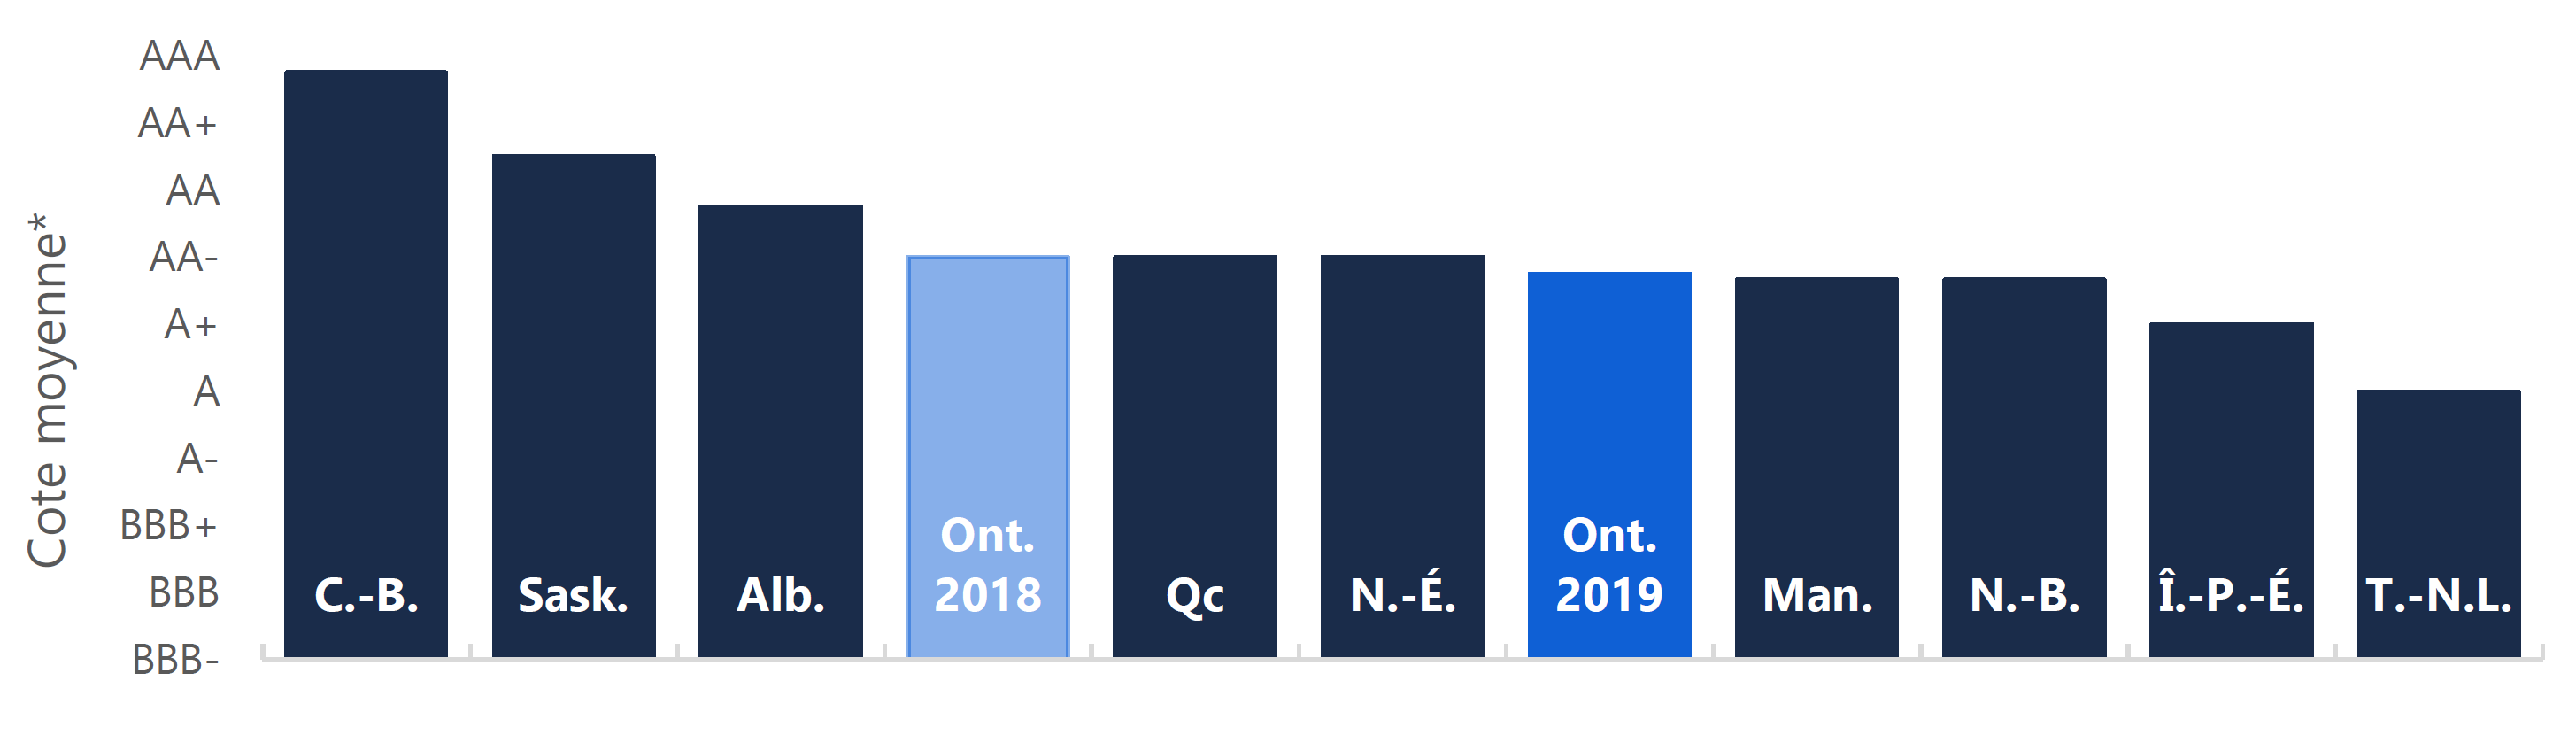 Cote de crédit moyenne par province au mois d’octobre 2019